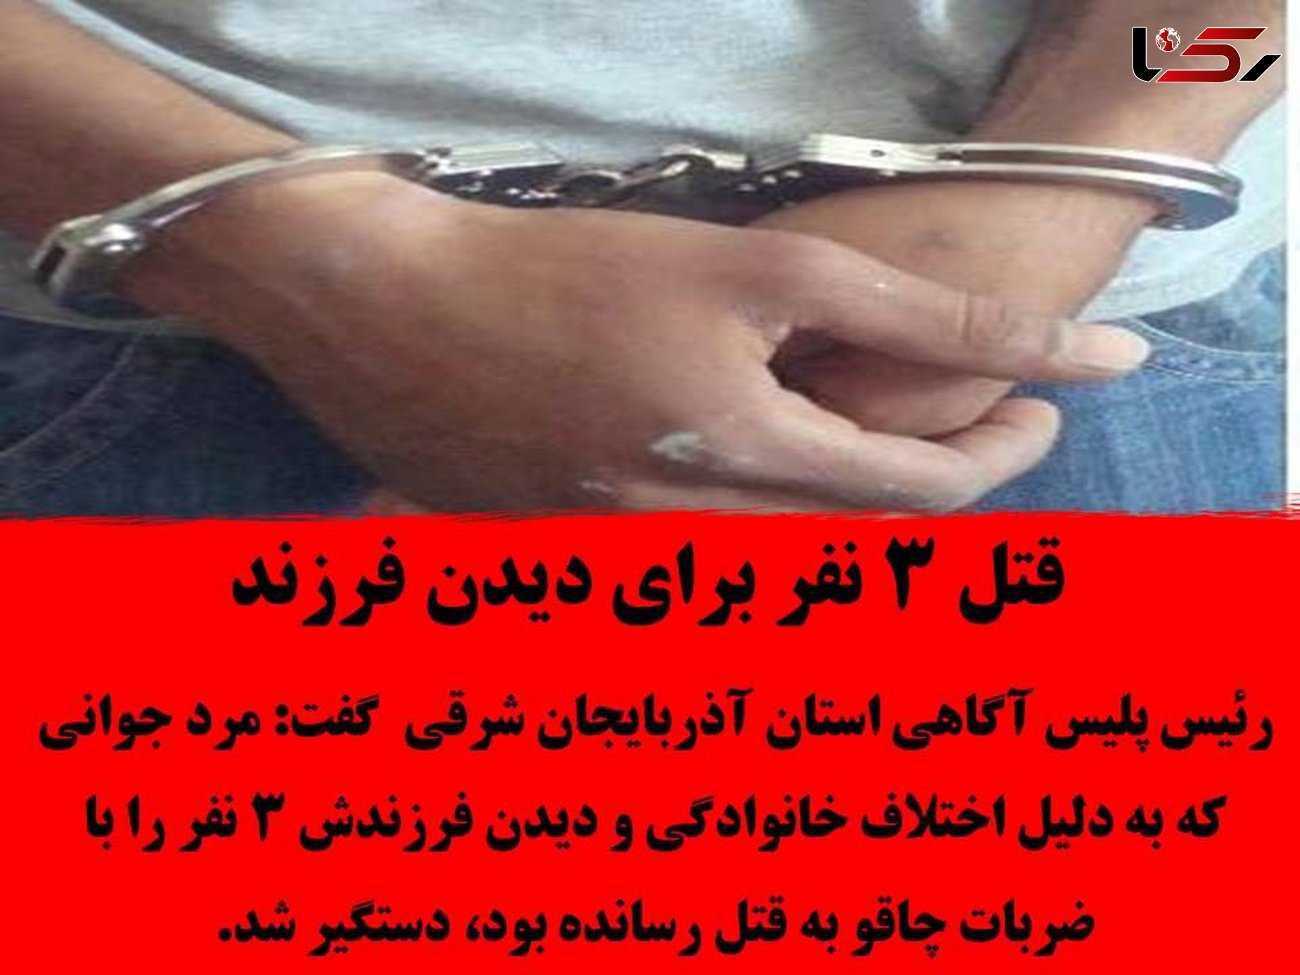 قتل عام خانوادگی برای دیدن نوزاد 6 ماهه در تبریز / مرد خشن دستگیر شد